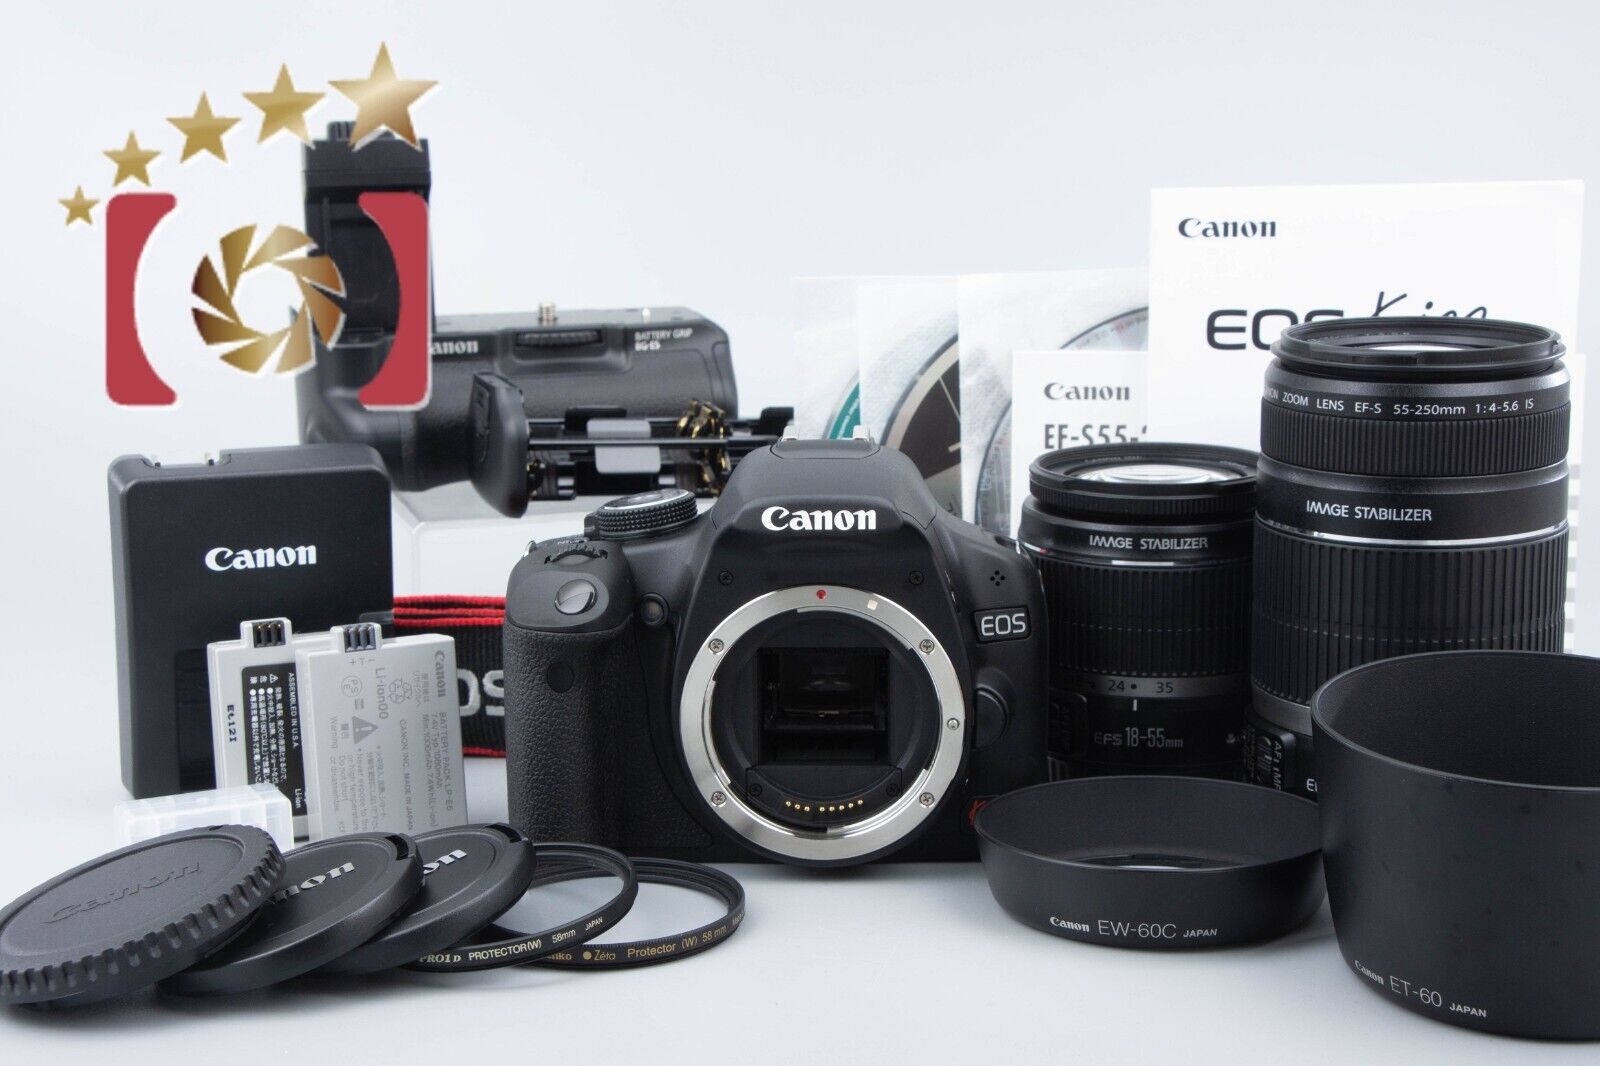 "Count 262" Canon EOS Kiss X3 / Rebel T1i / 500D 15.1MP EF-S 18-55 55-250 Lenses